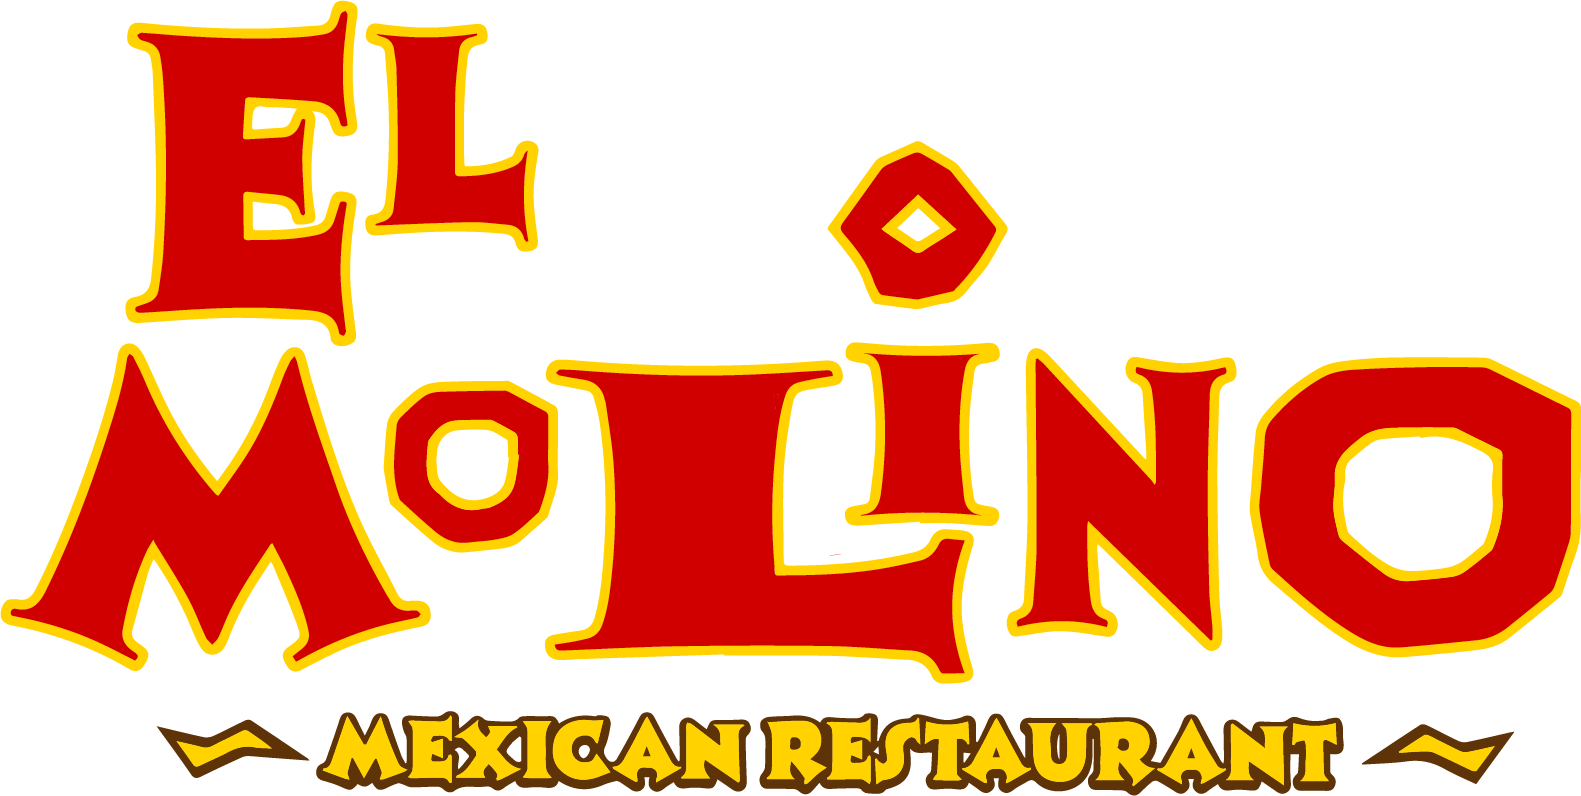 El Molino Mexican Restaurant logo top